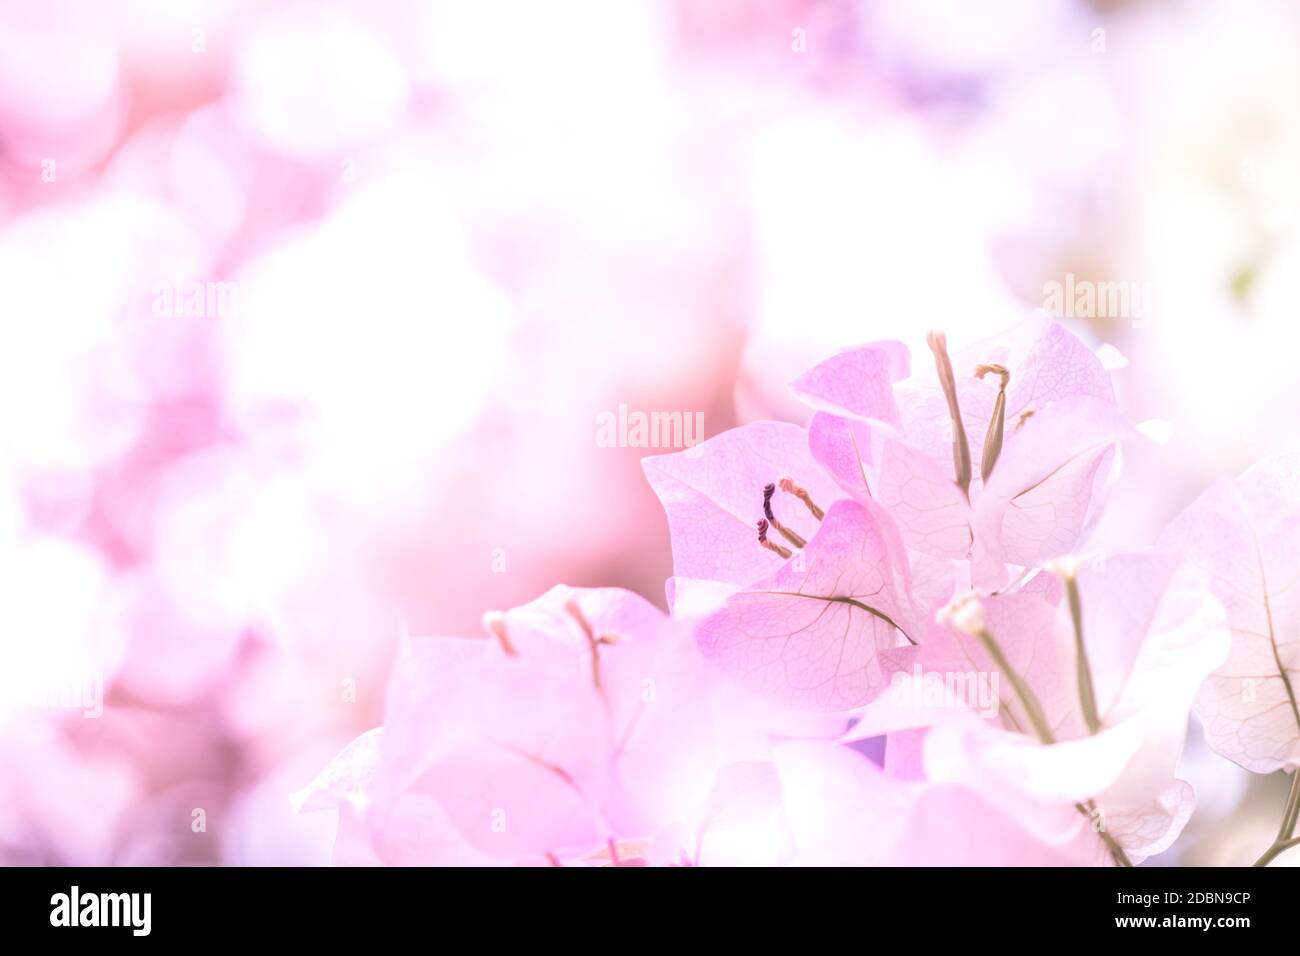 Das Hintergrundbild der rosa Blumen ist in einem abstrakten Stil, der verschwommen dargestellt, für die Platzierung von Zeichen verwendet. Stockfoto